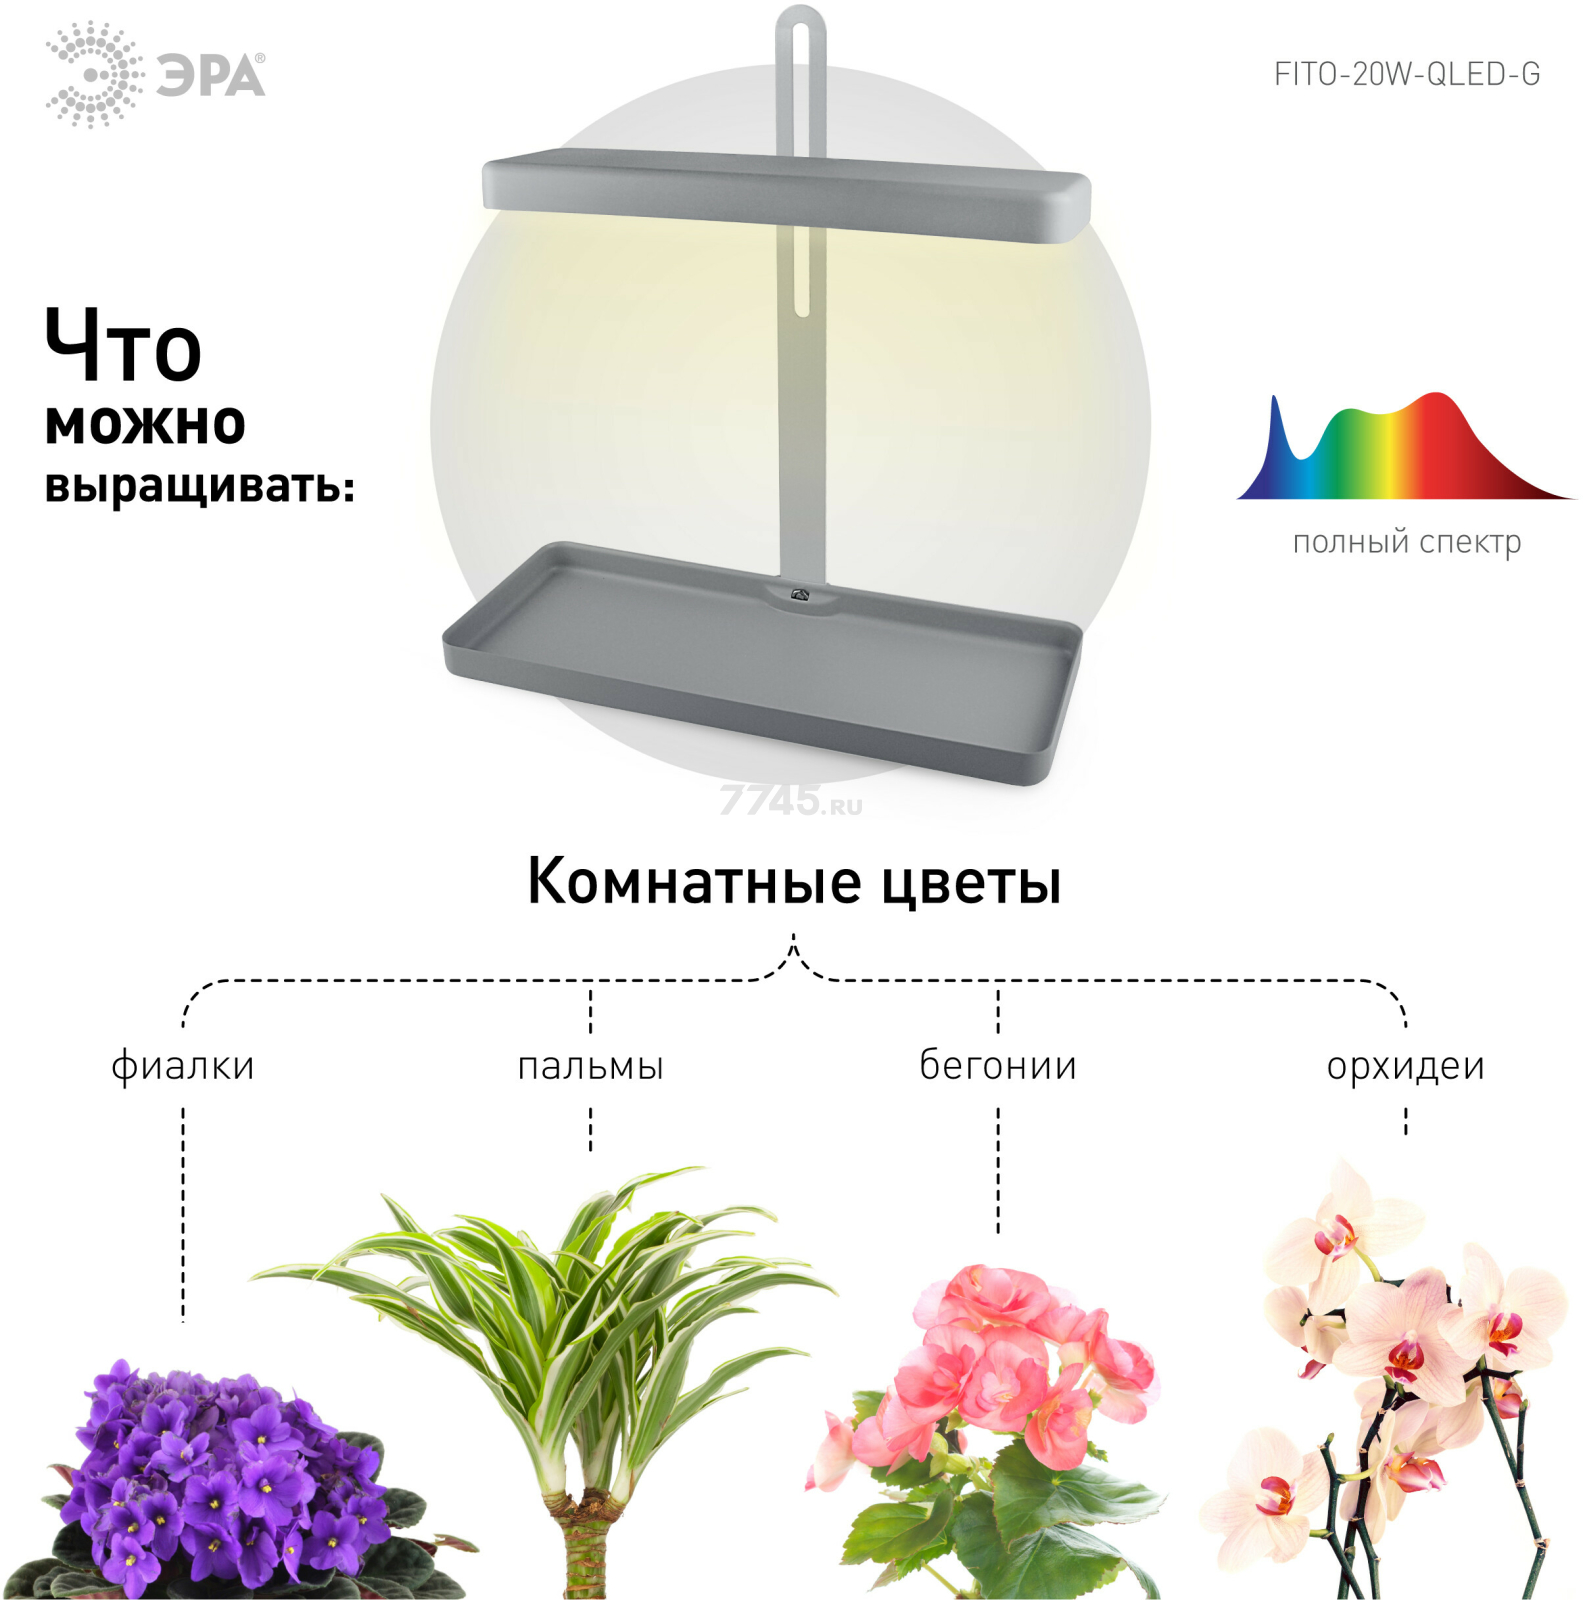 Светильник настольный для растений полного спектра ЭРА FITO-20W-QLED-G 20 Вт серый - Фото 3